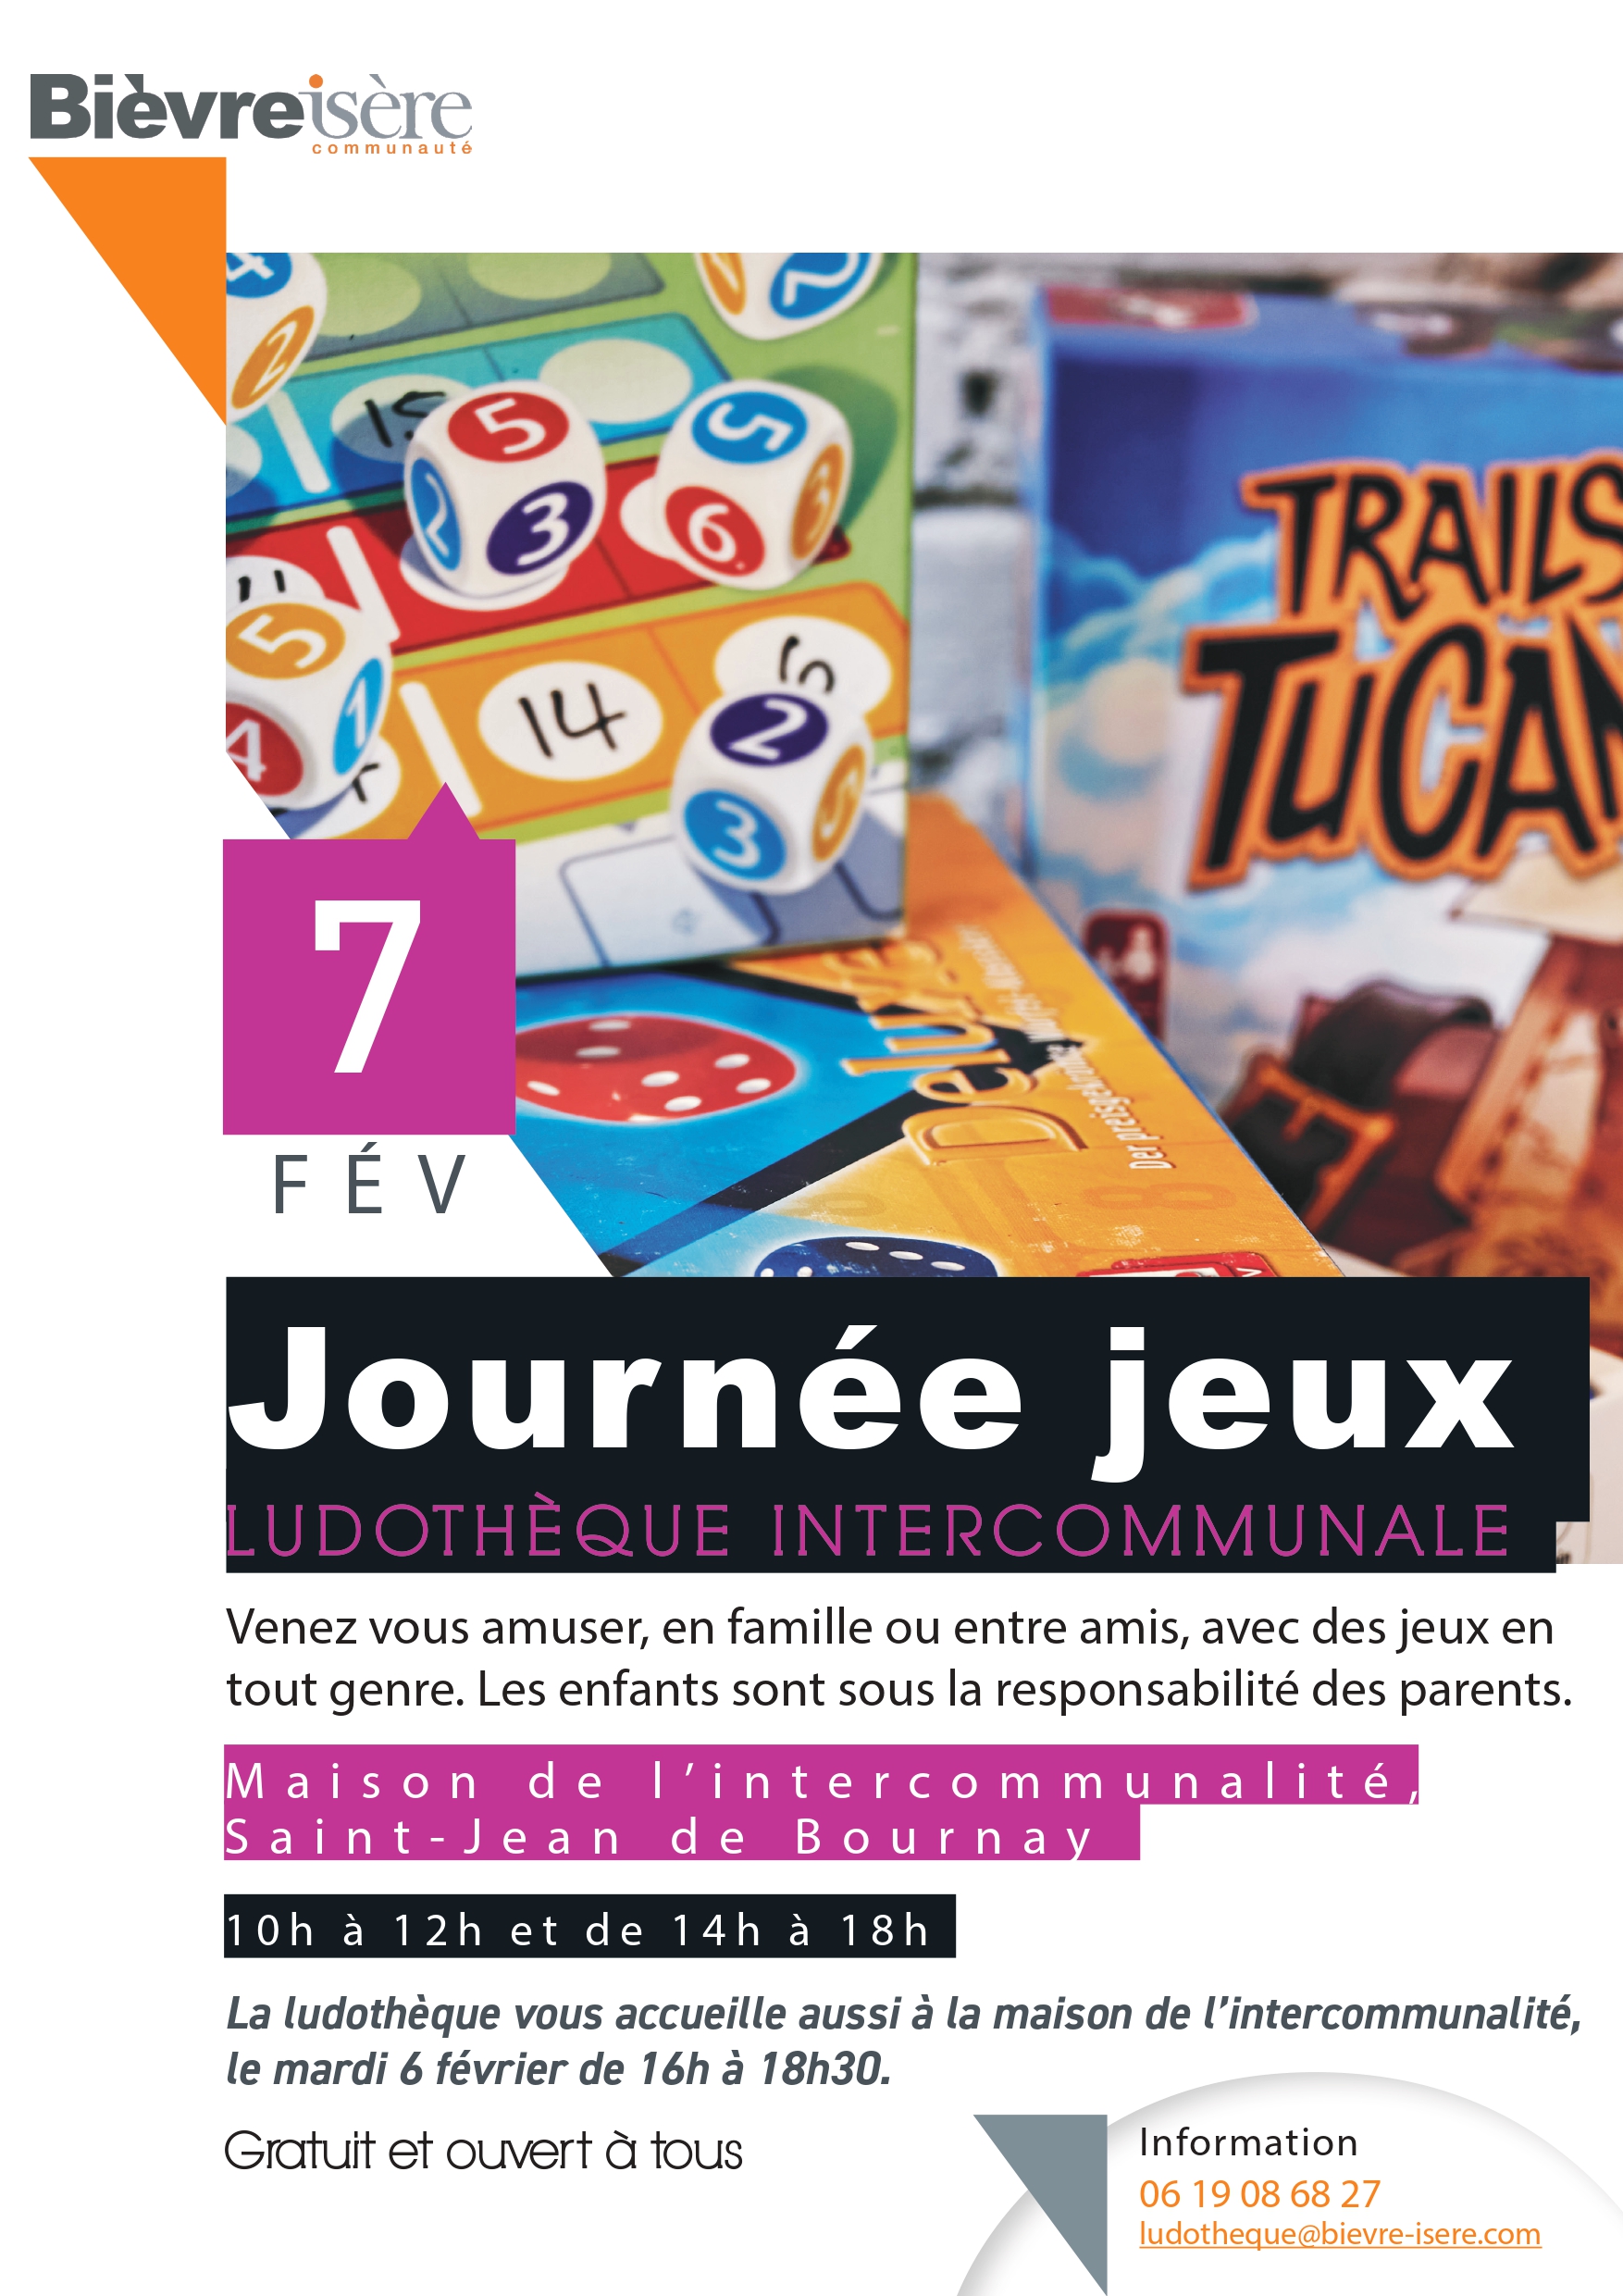 Bièvre Isère Communauté – Journée jeux à St Jean de Bournay